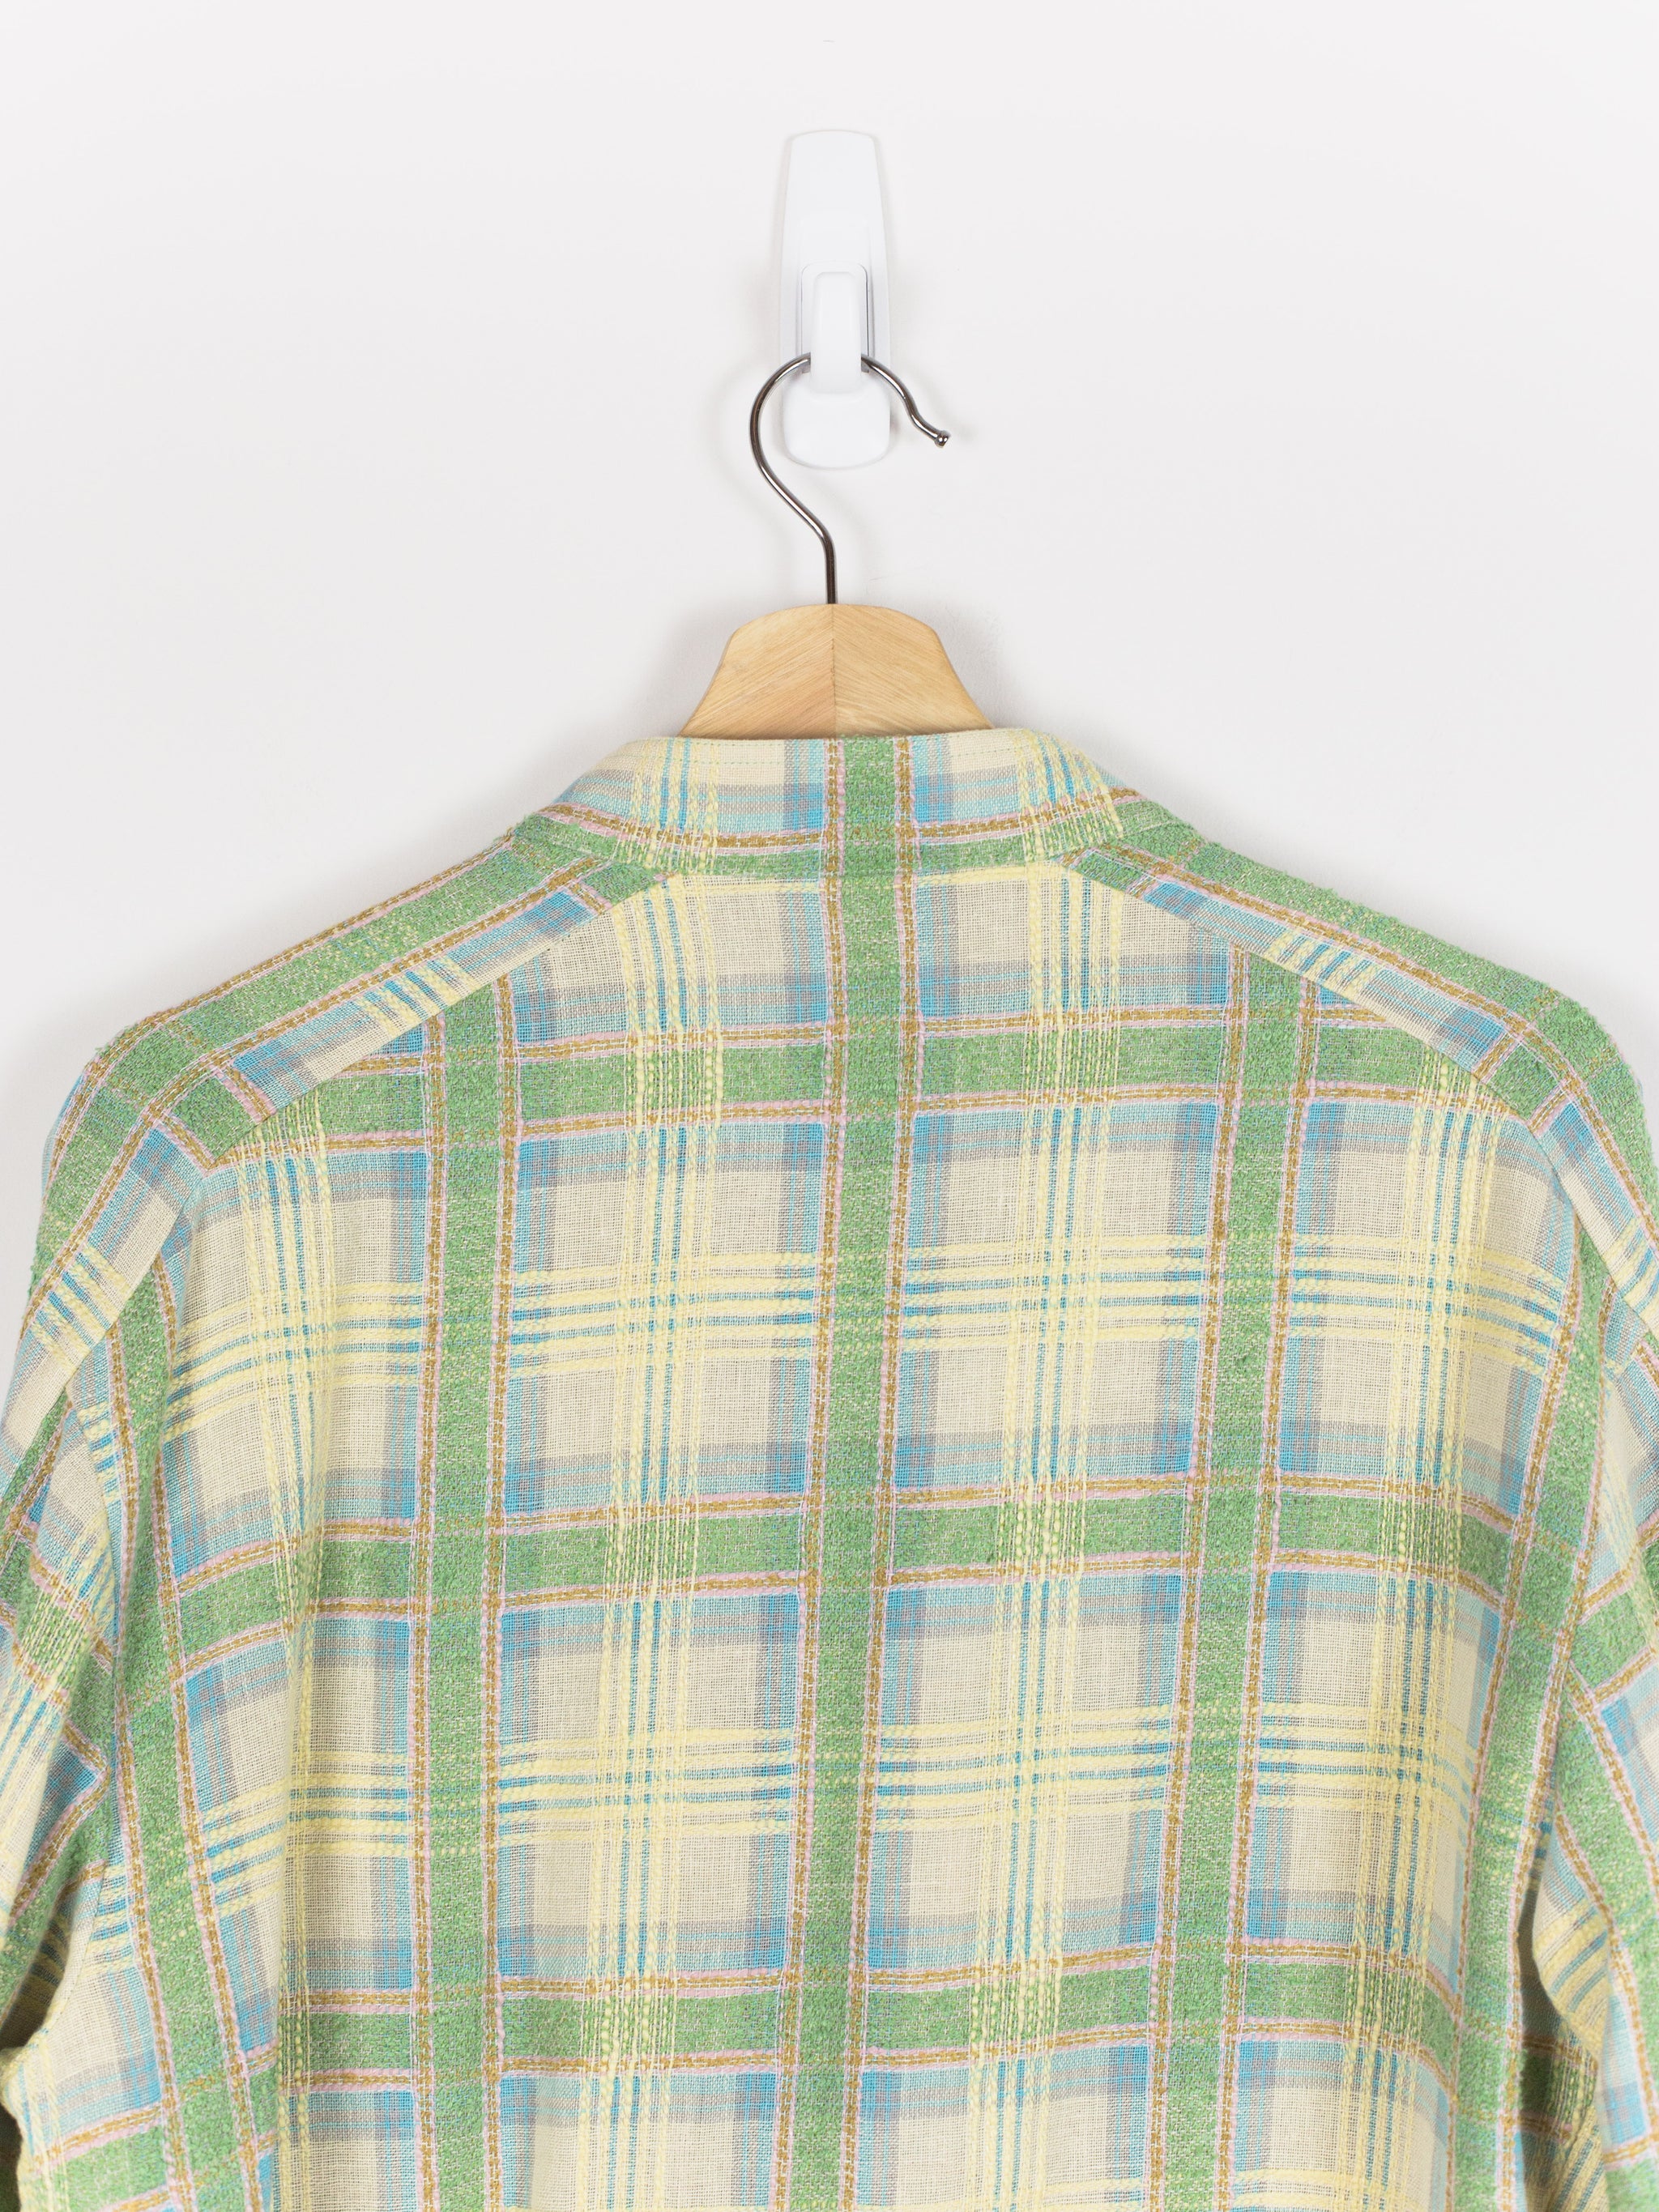 Kiko Kostadinov SS19 00062019 Apajerito Shirt (Green Madras Check) – HUIBEN